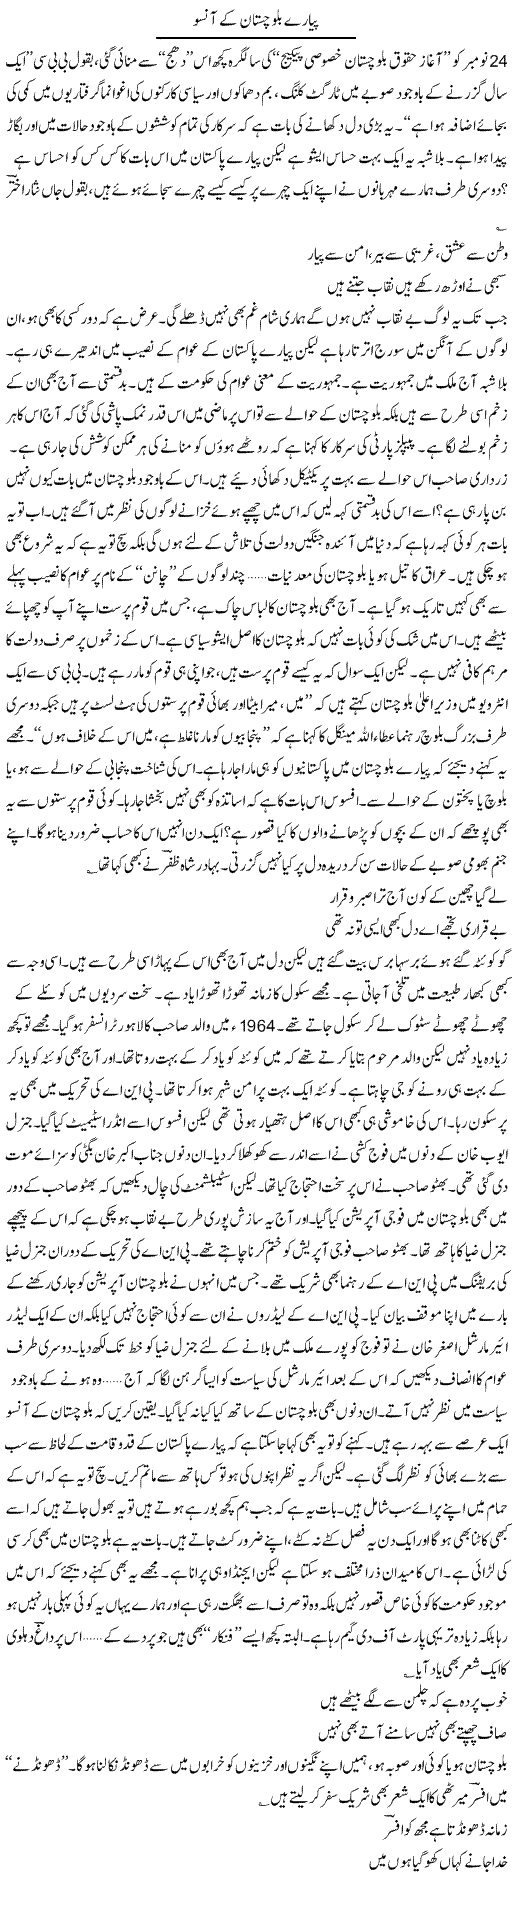 Tears of Balochistan Express Column Ijaz Hafeez 7 December 2010